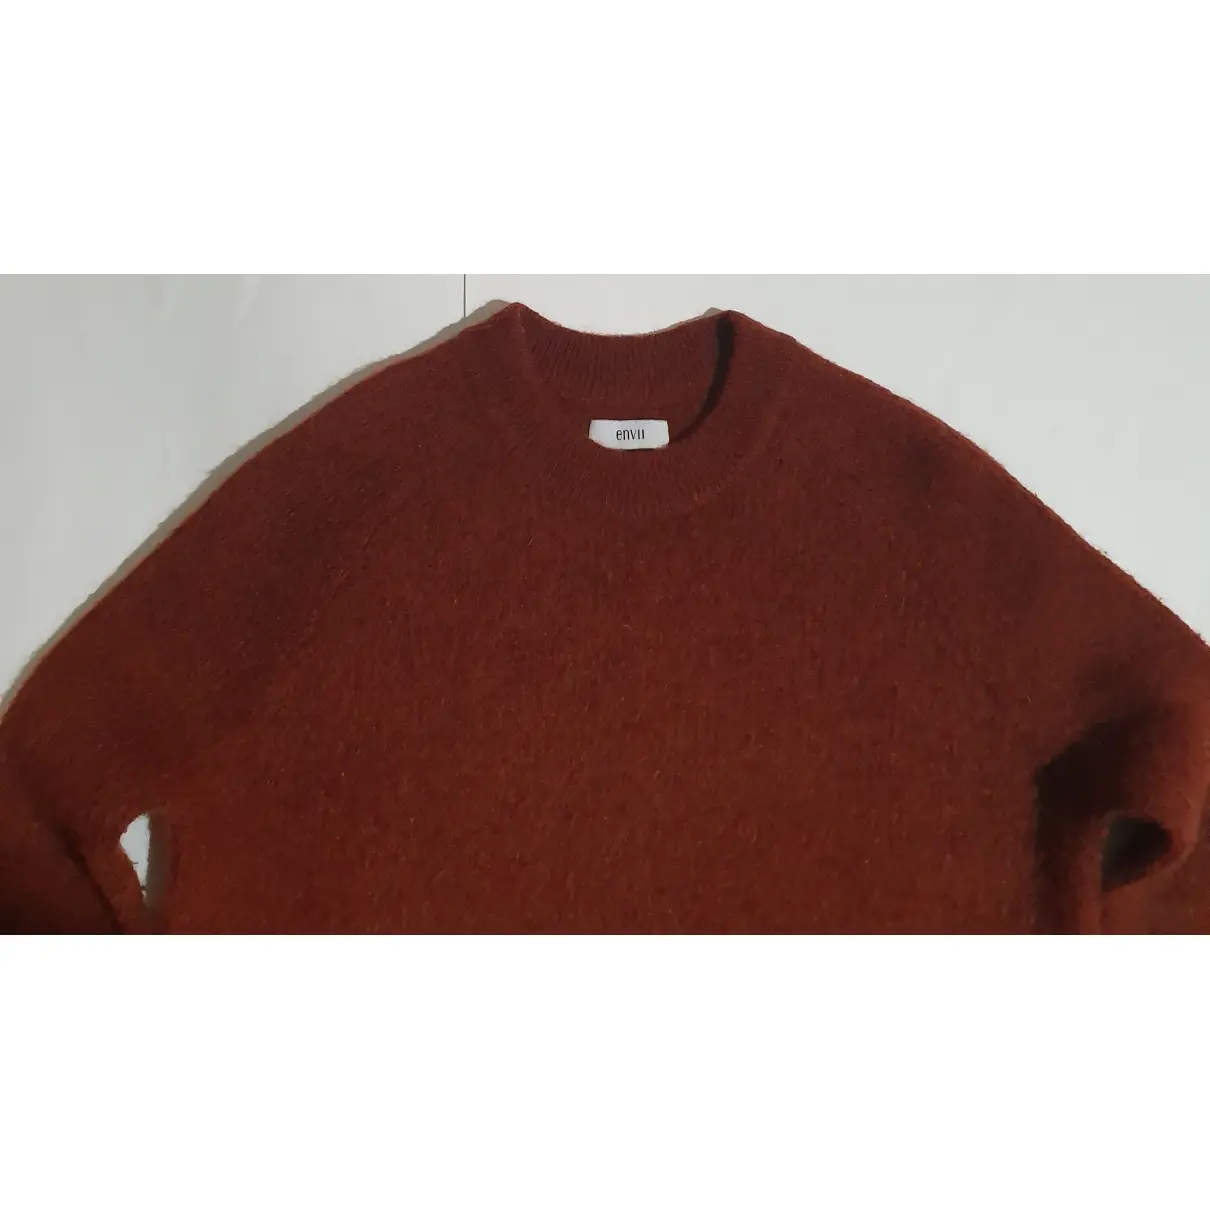 Buy Envii Wool jumper online